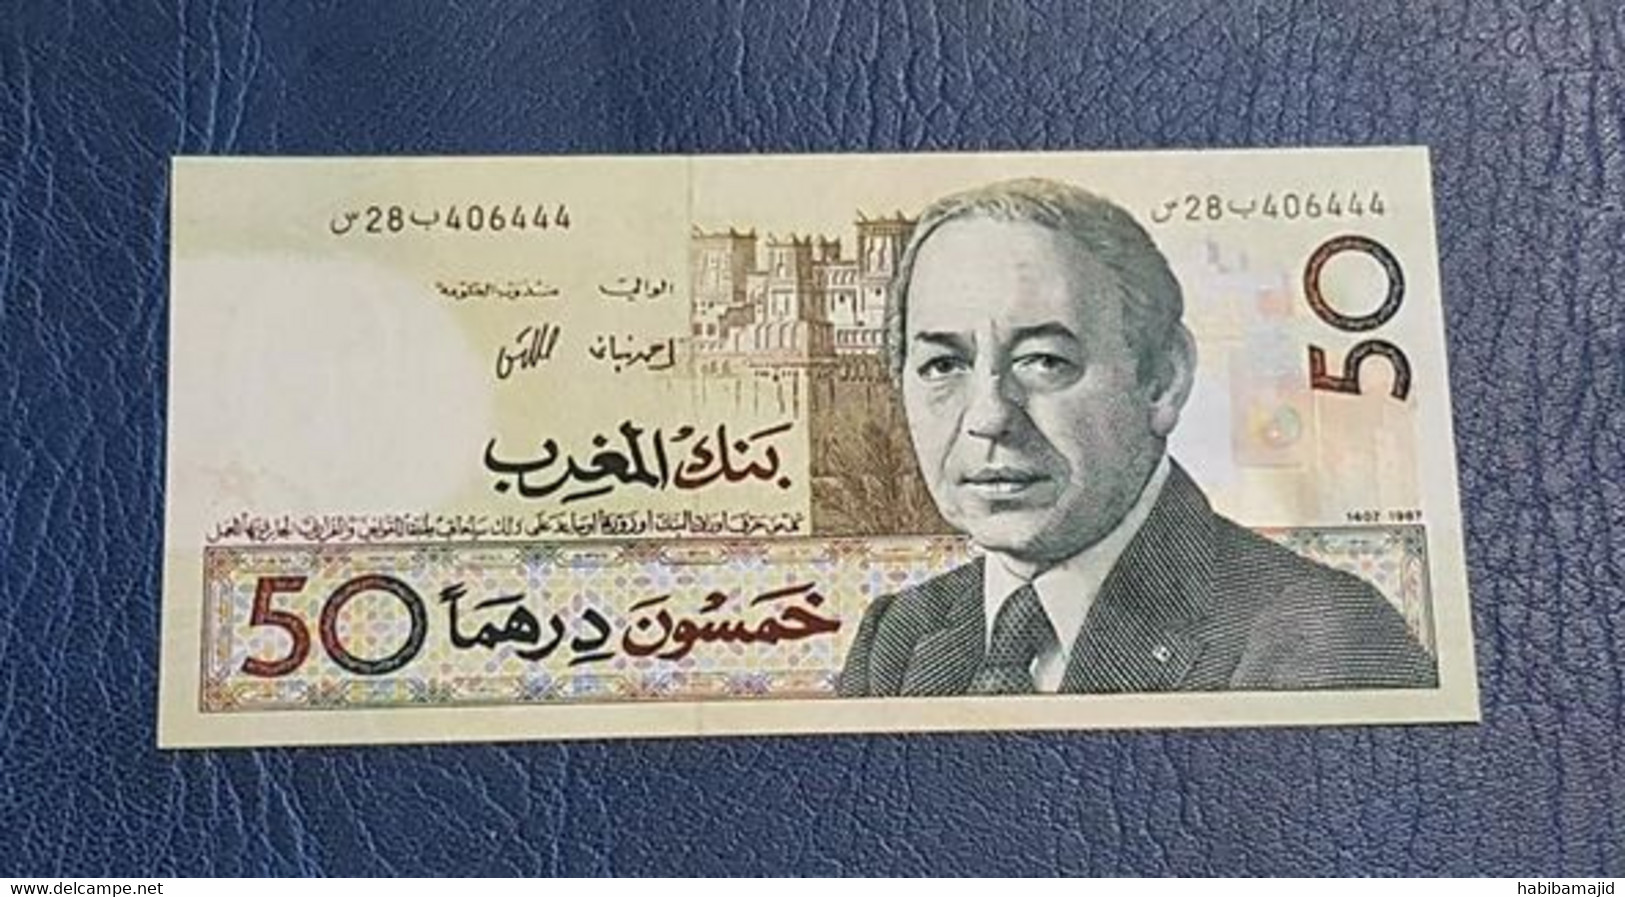 MAROC : "RARE" Billet De 50 Dirhams FACE (Hassan II) 1987 "UNC" - Morocco